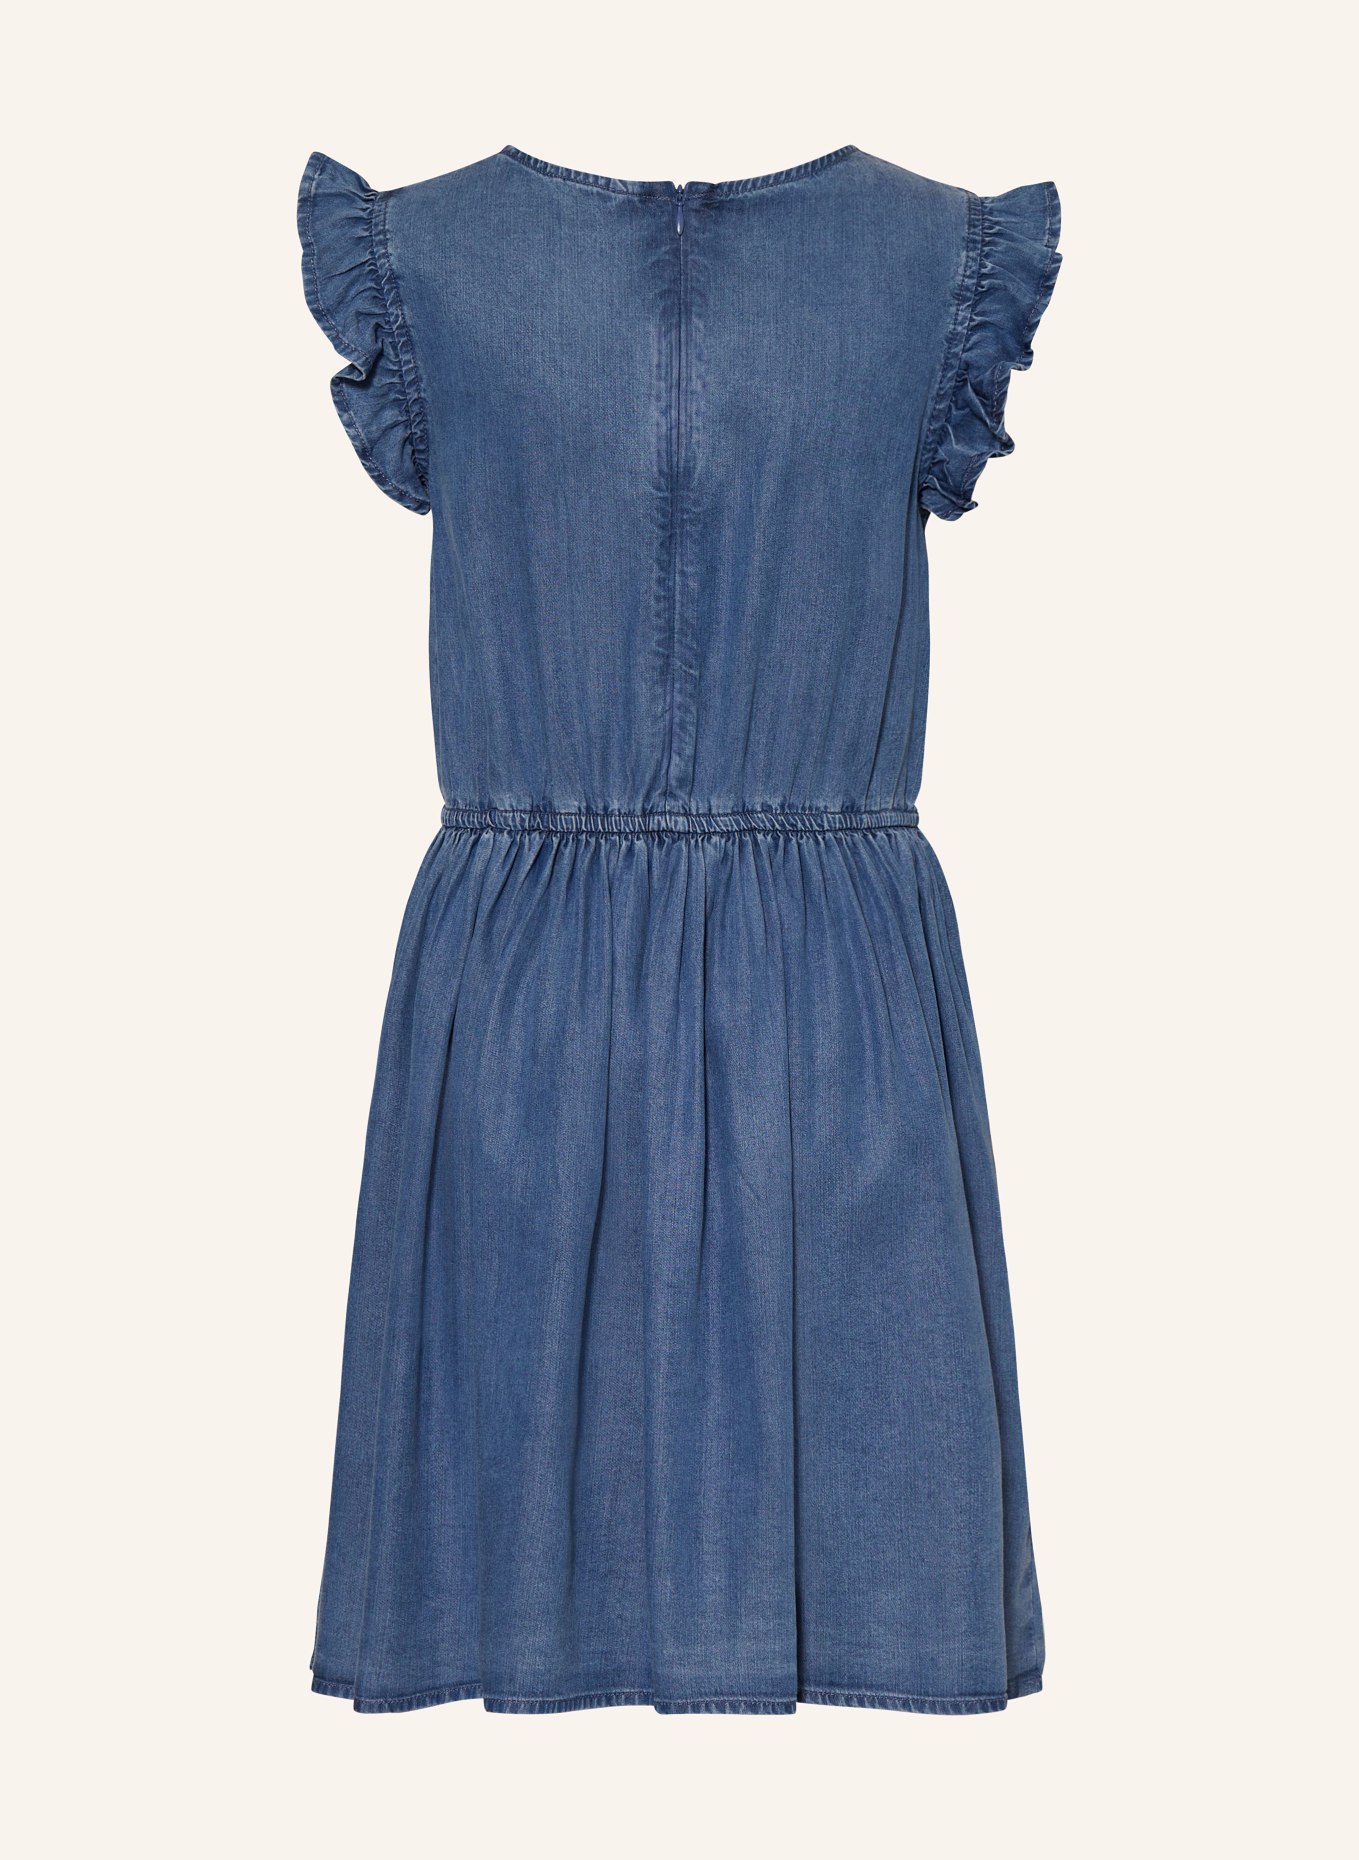 GUESS Kleid mit Rüschen in Jeansoptik, Farbe: BLAU (Bild 2)